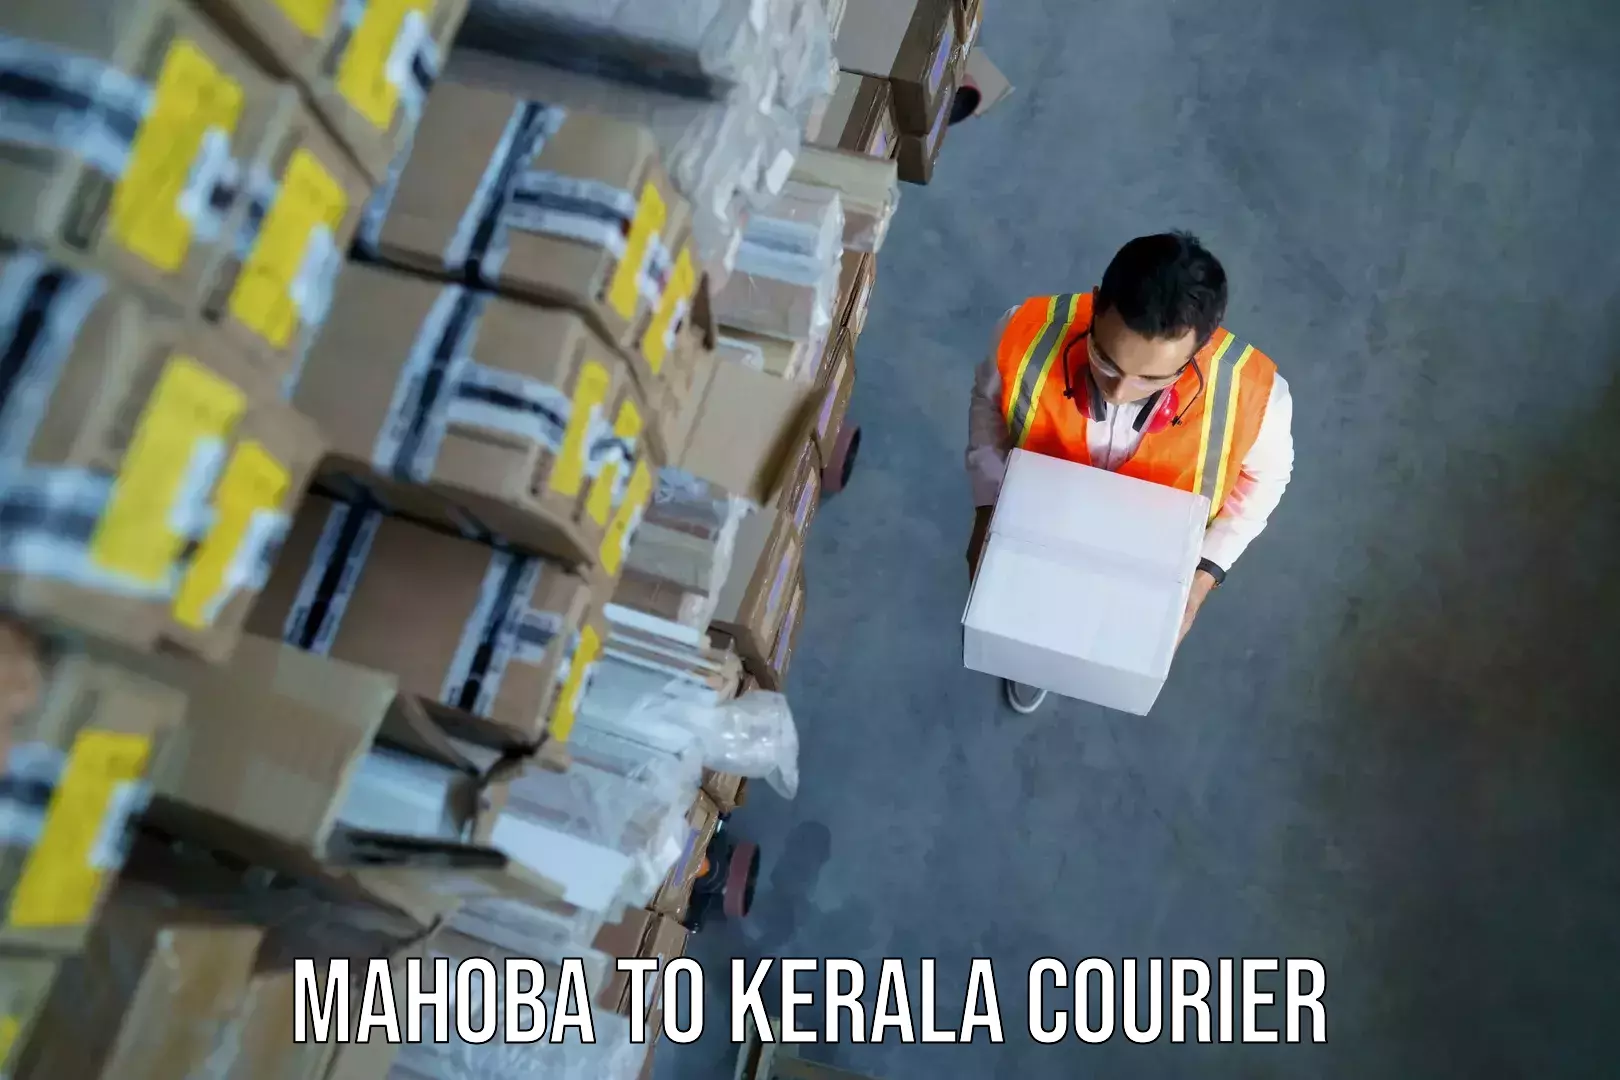 Baggage shipping service Mahoba to Pathanamthitta